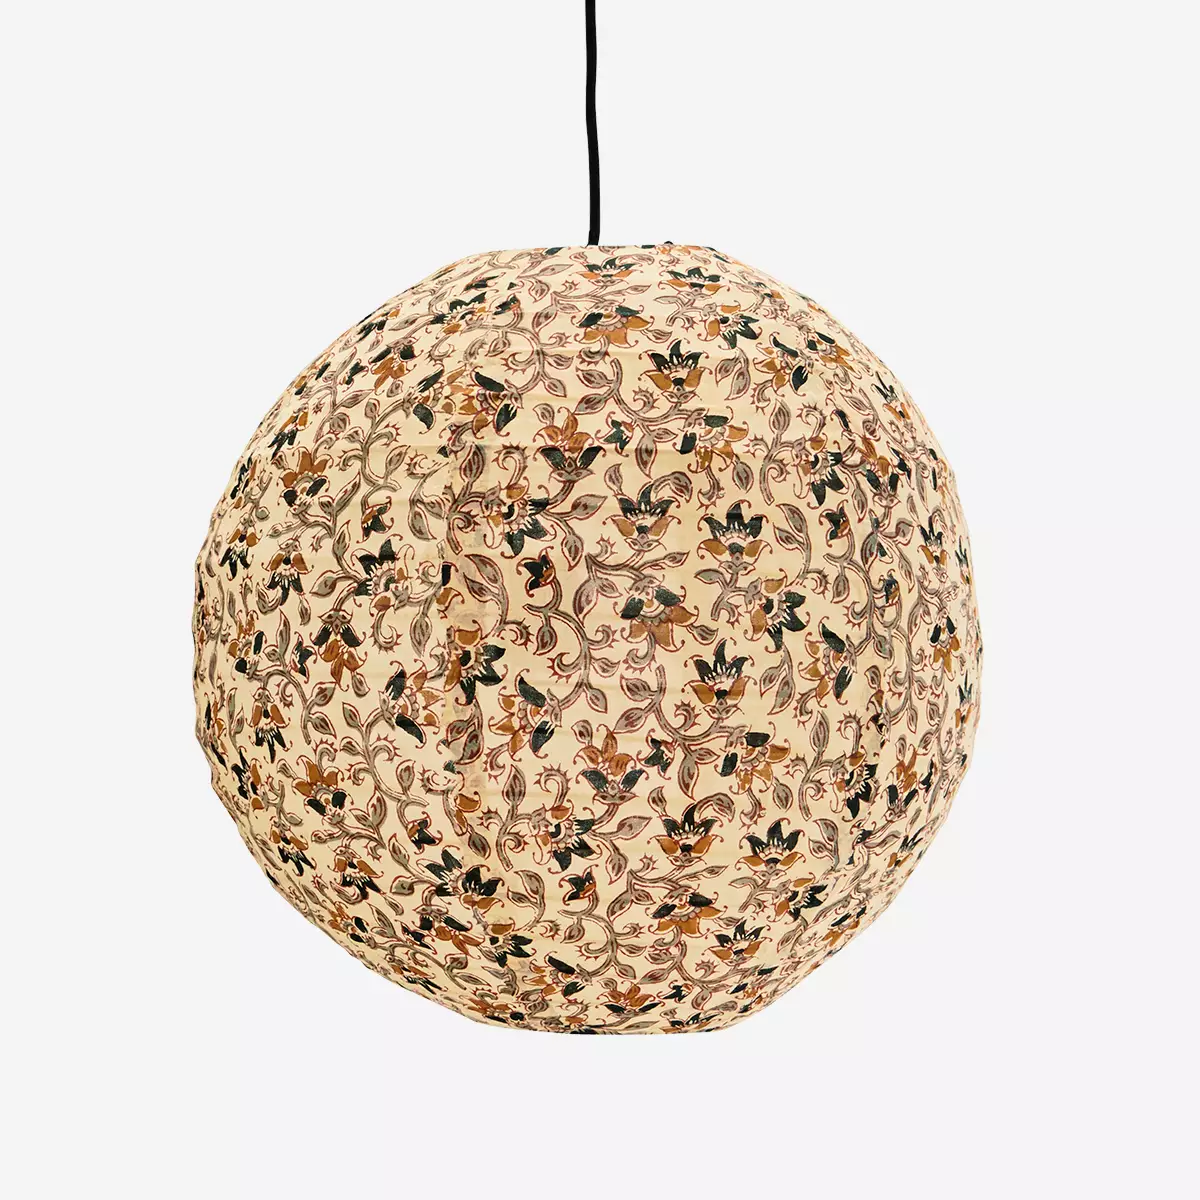 madam-stoltz-printed-cotton-ceiling-lamp-round-flower-pattern